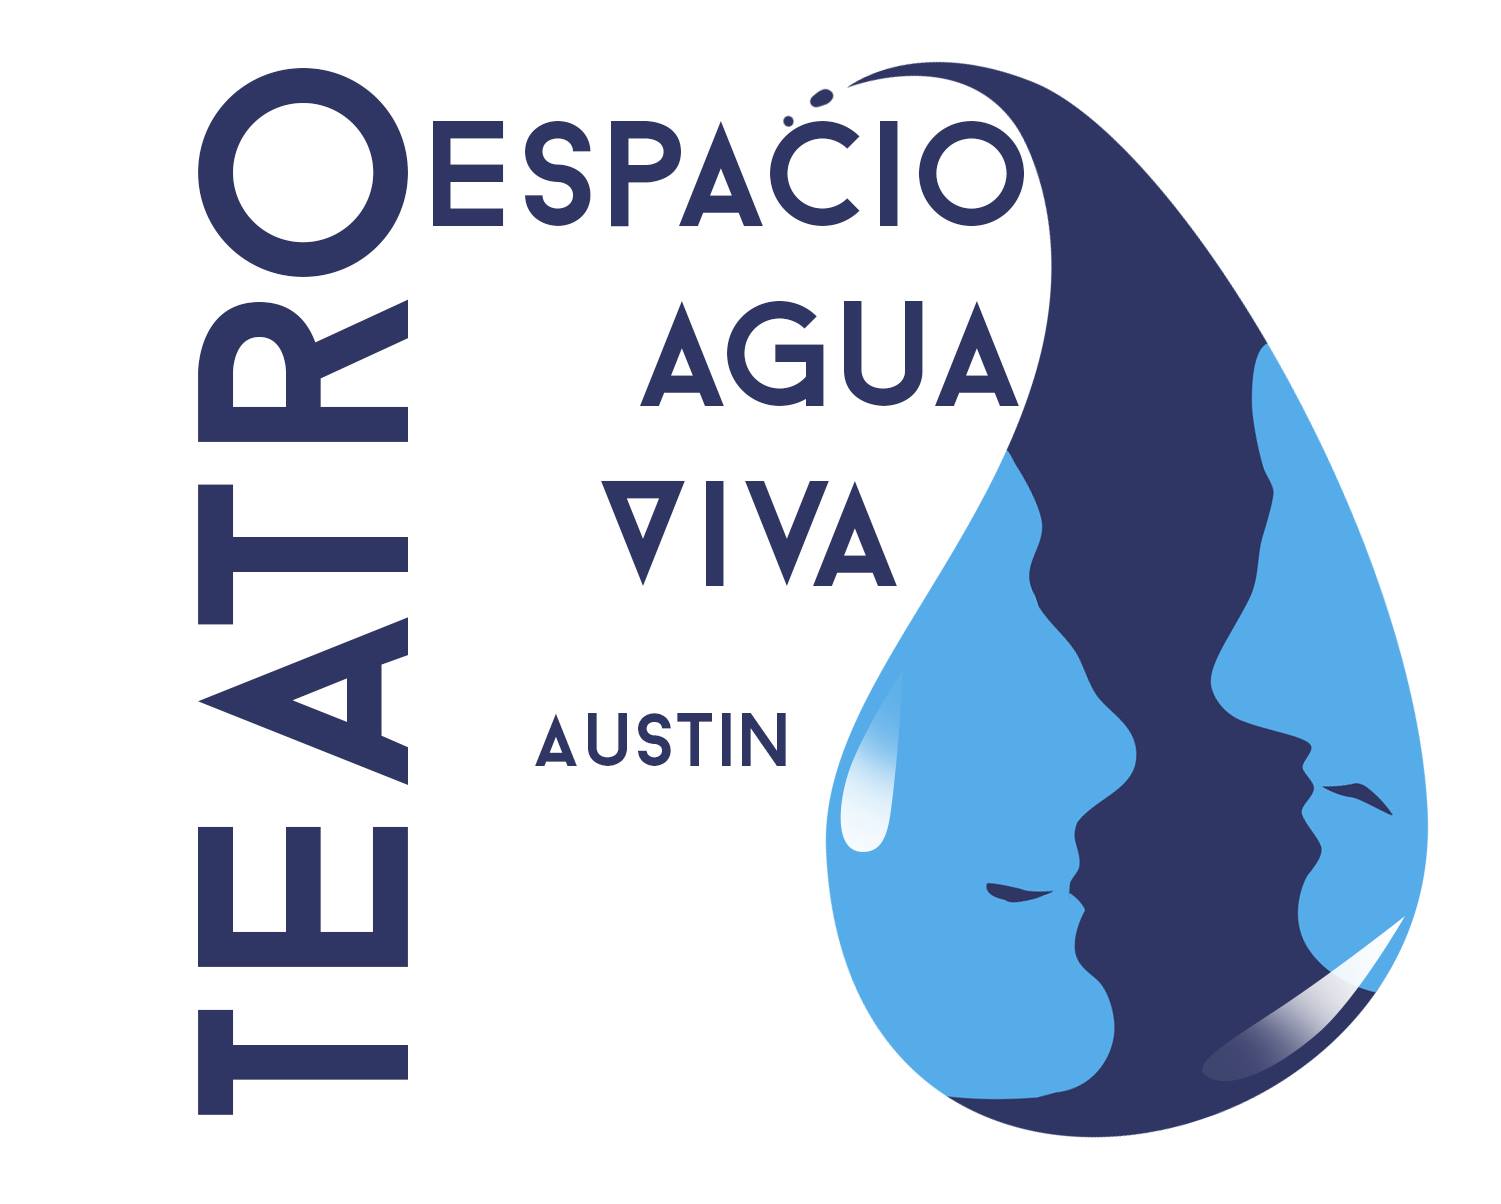 Teatro Espacio Agua Viva